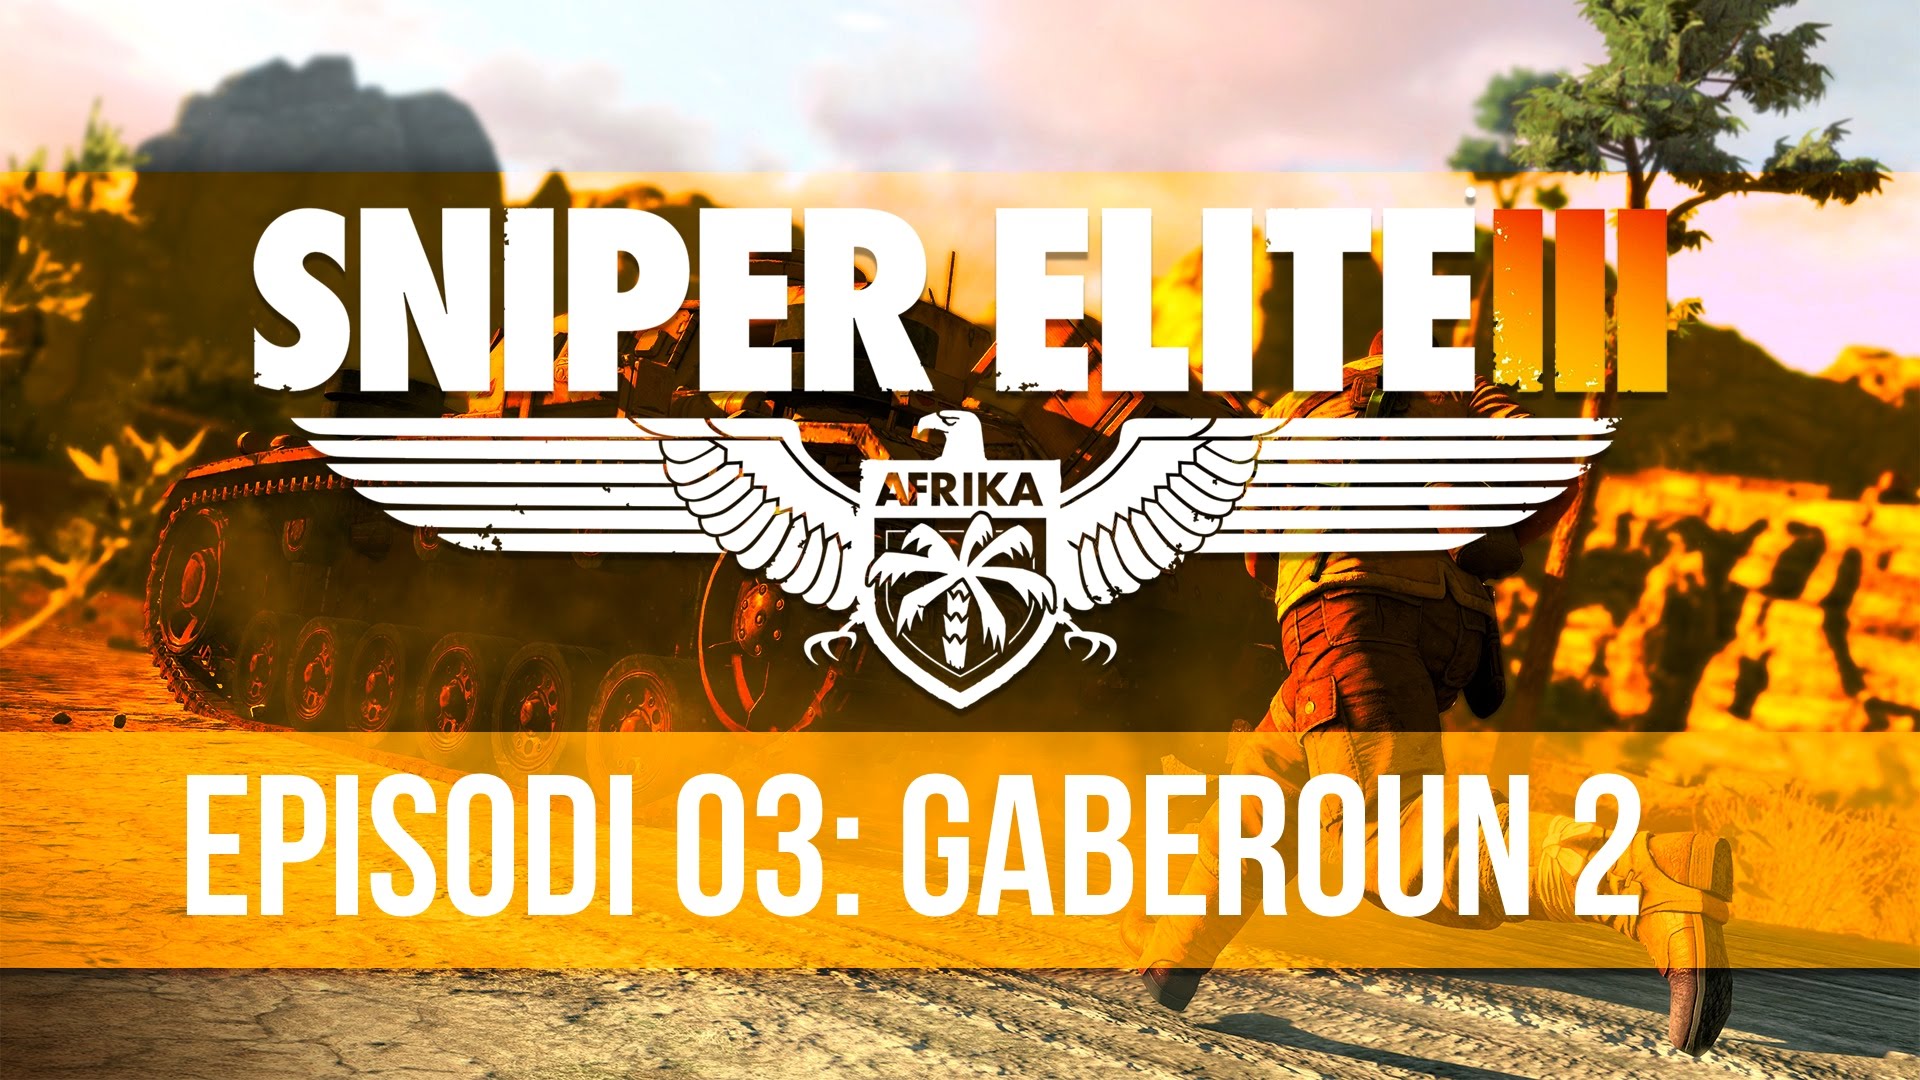 Sniper Elite III - Episodi 3: Gaberoun 2 de Project1407